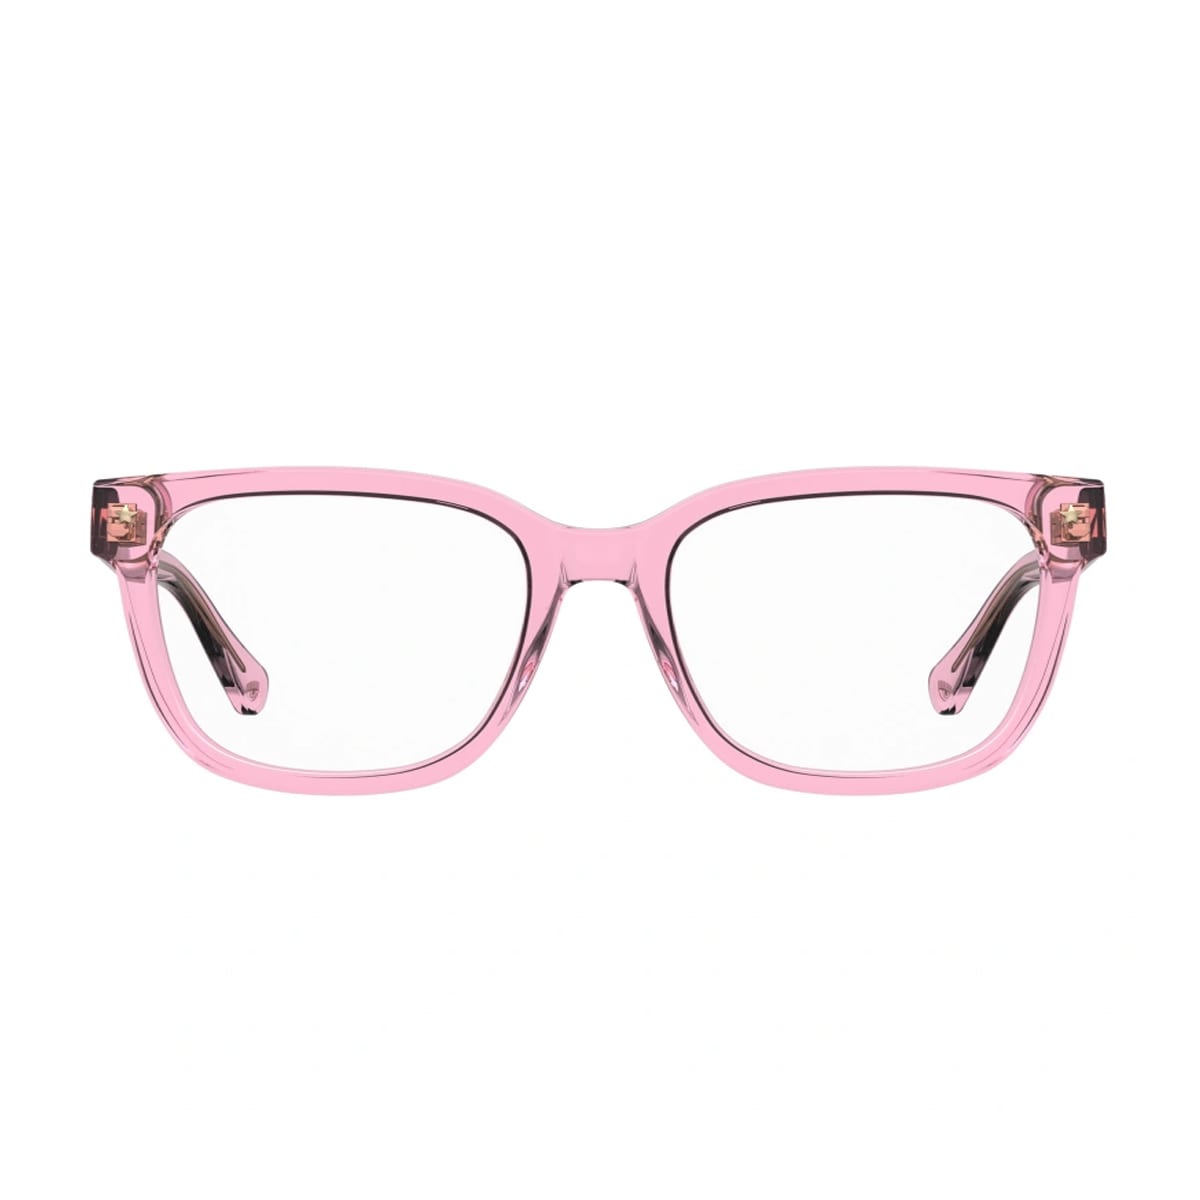 Cf 7027 35j/18 Pink Glasses